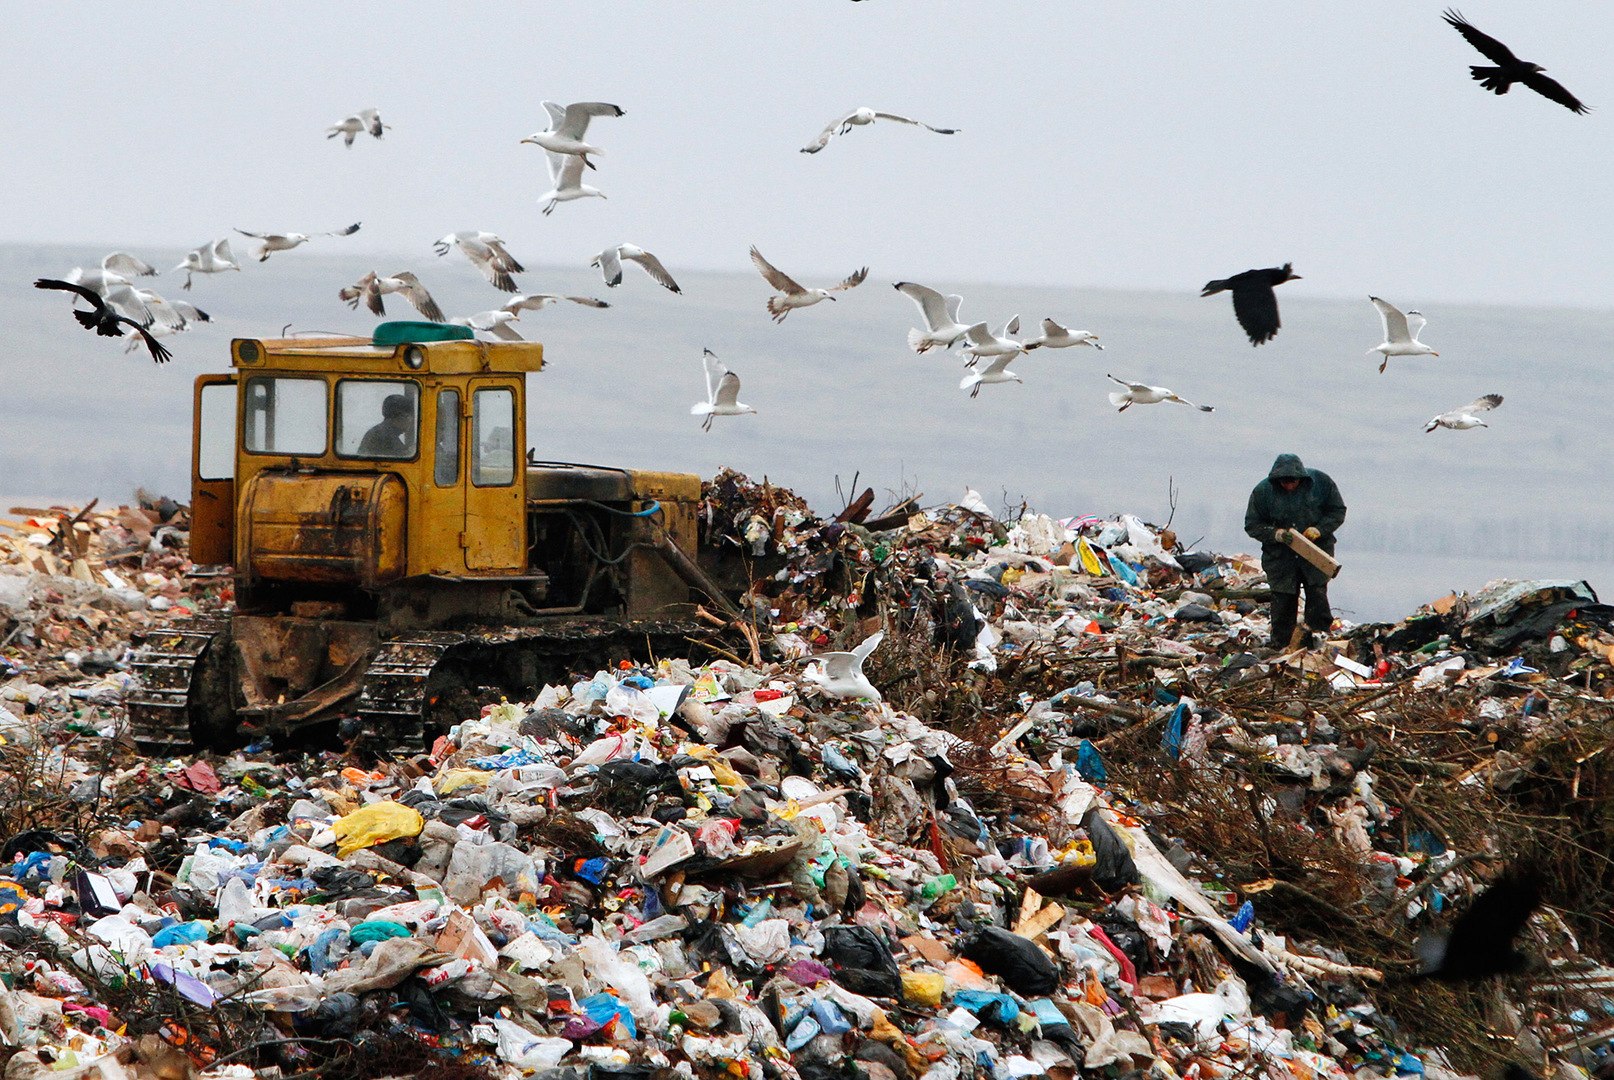 Загрязнение мусором окружающей